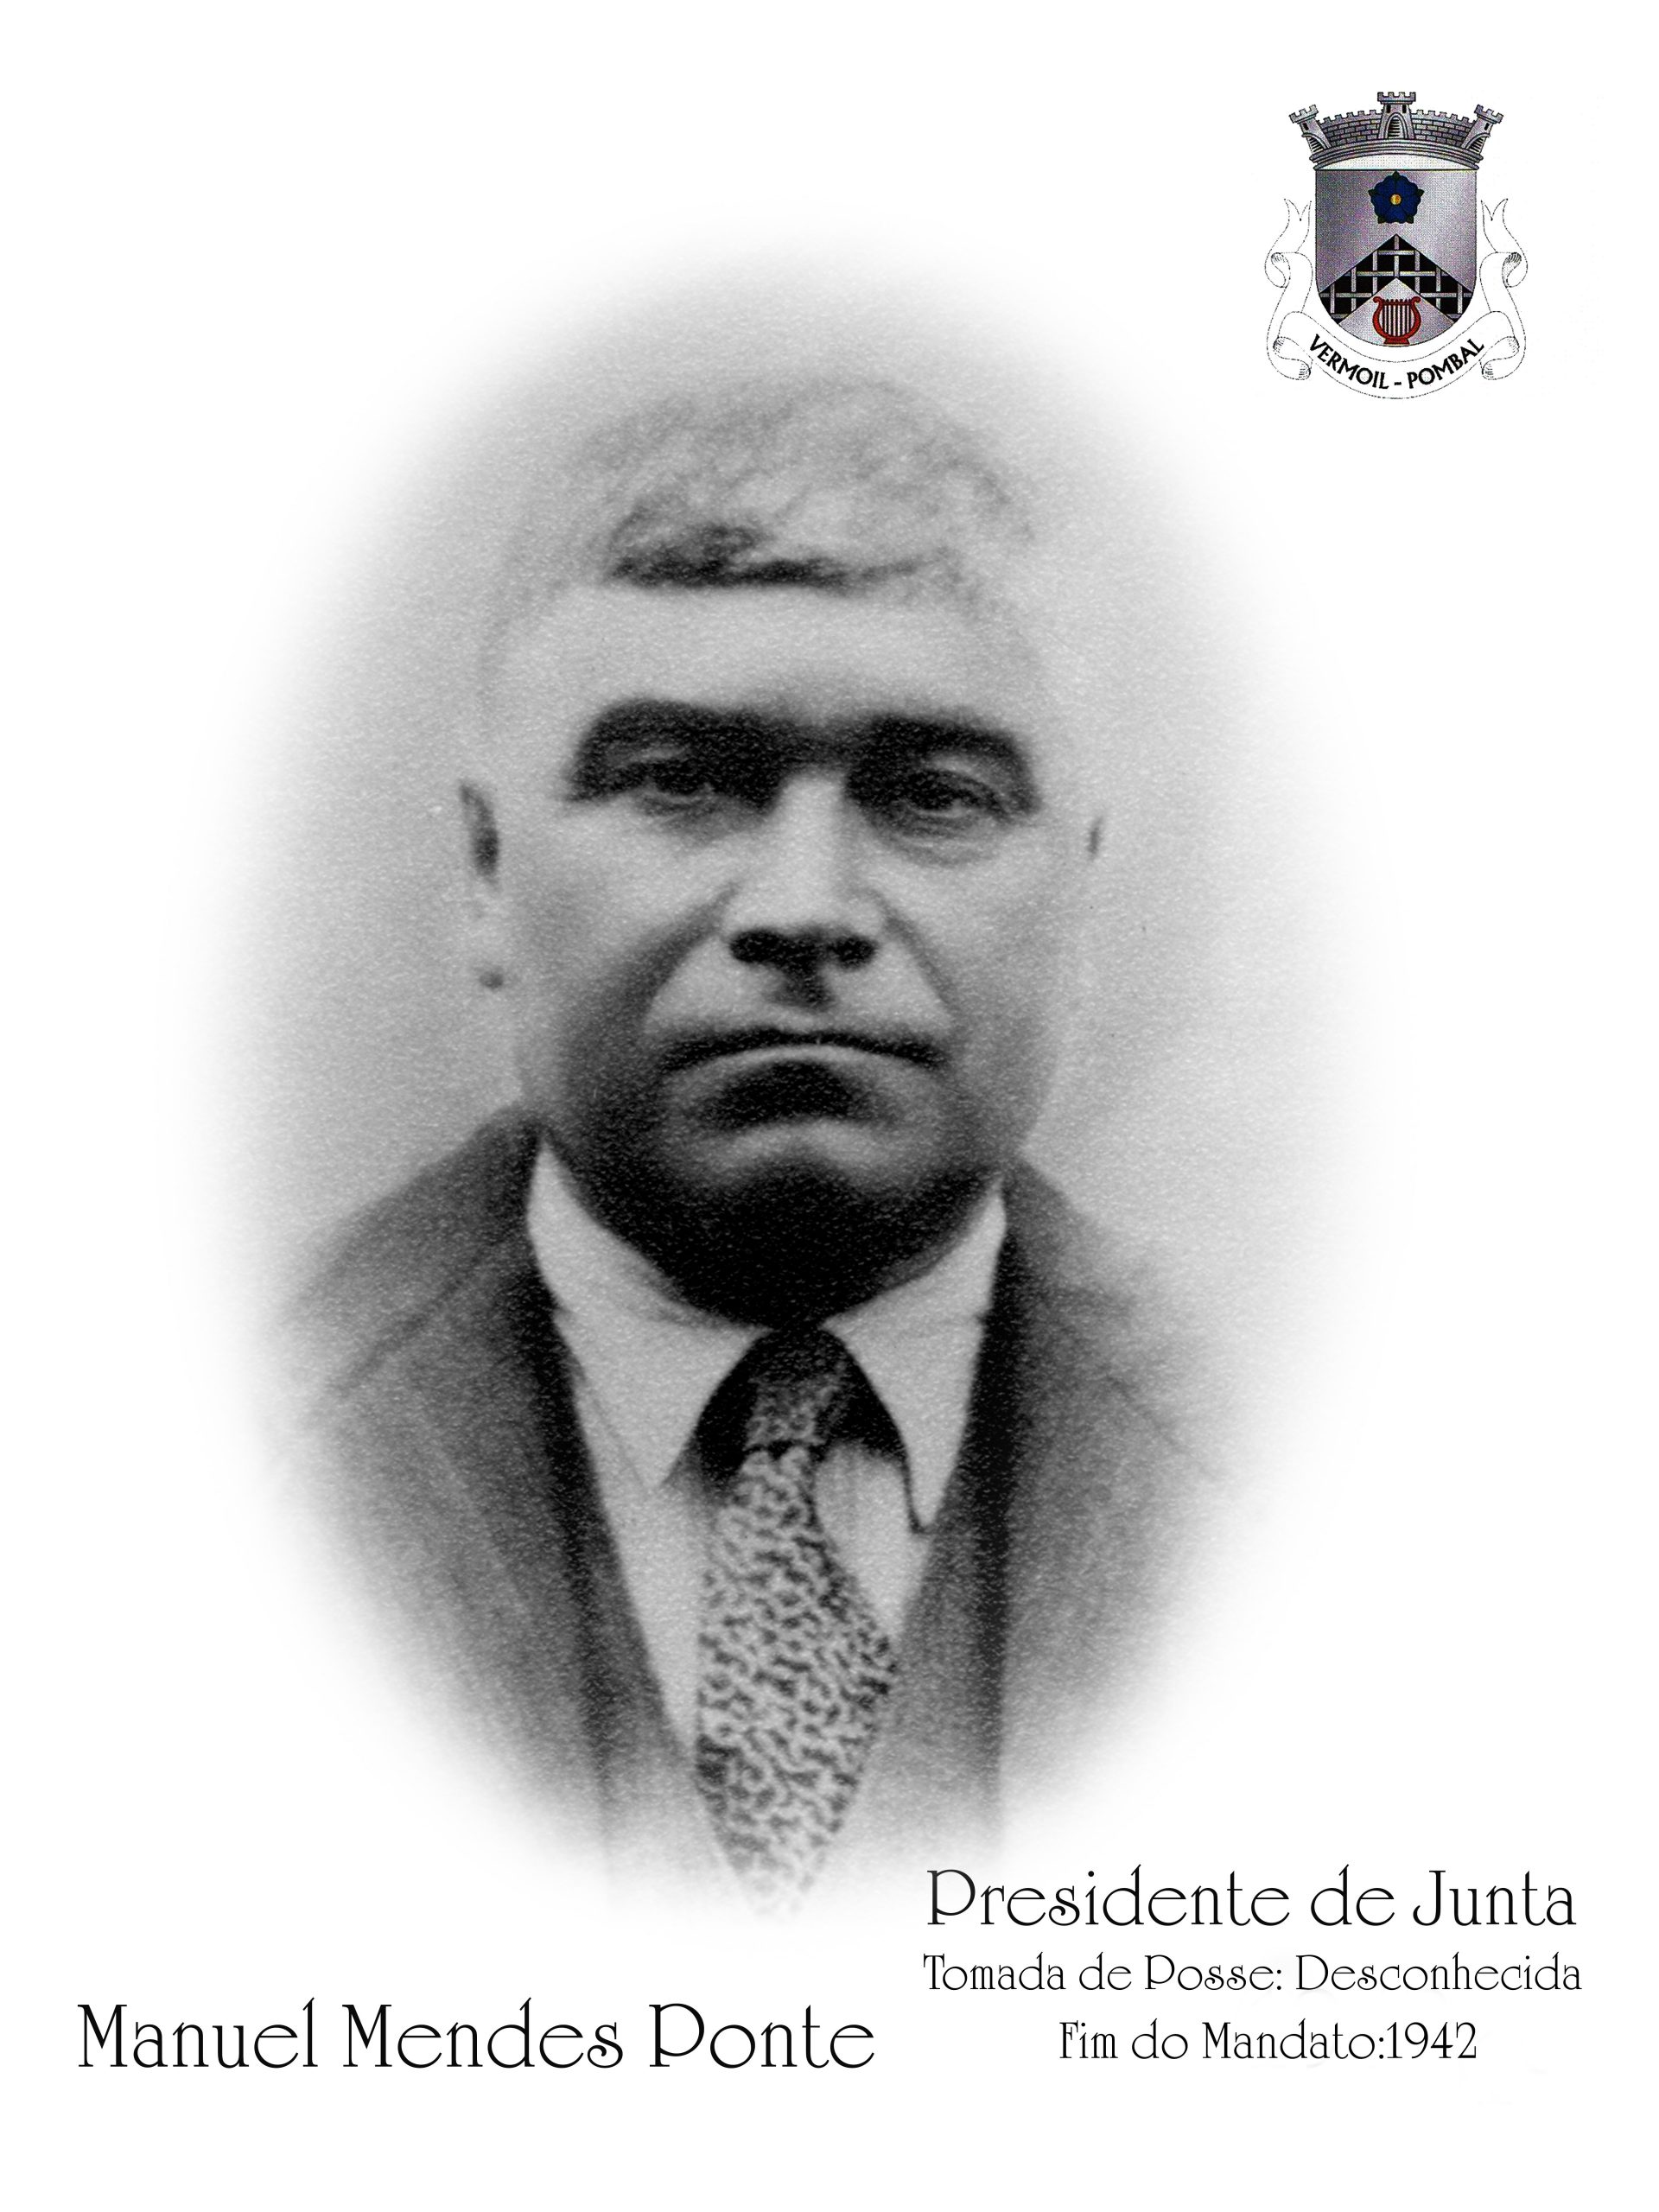 Manuel Mendes Ponte - Data da tomada de posse desconhecida; fim do mandato em 1942